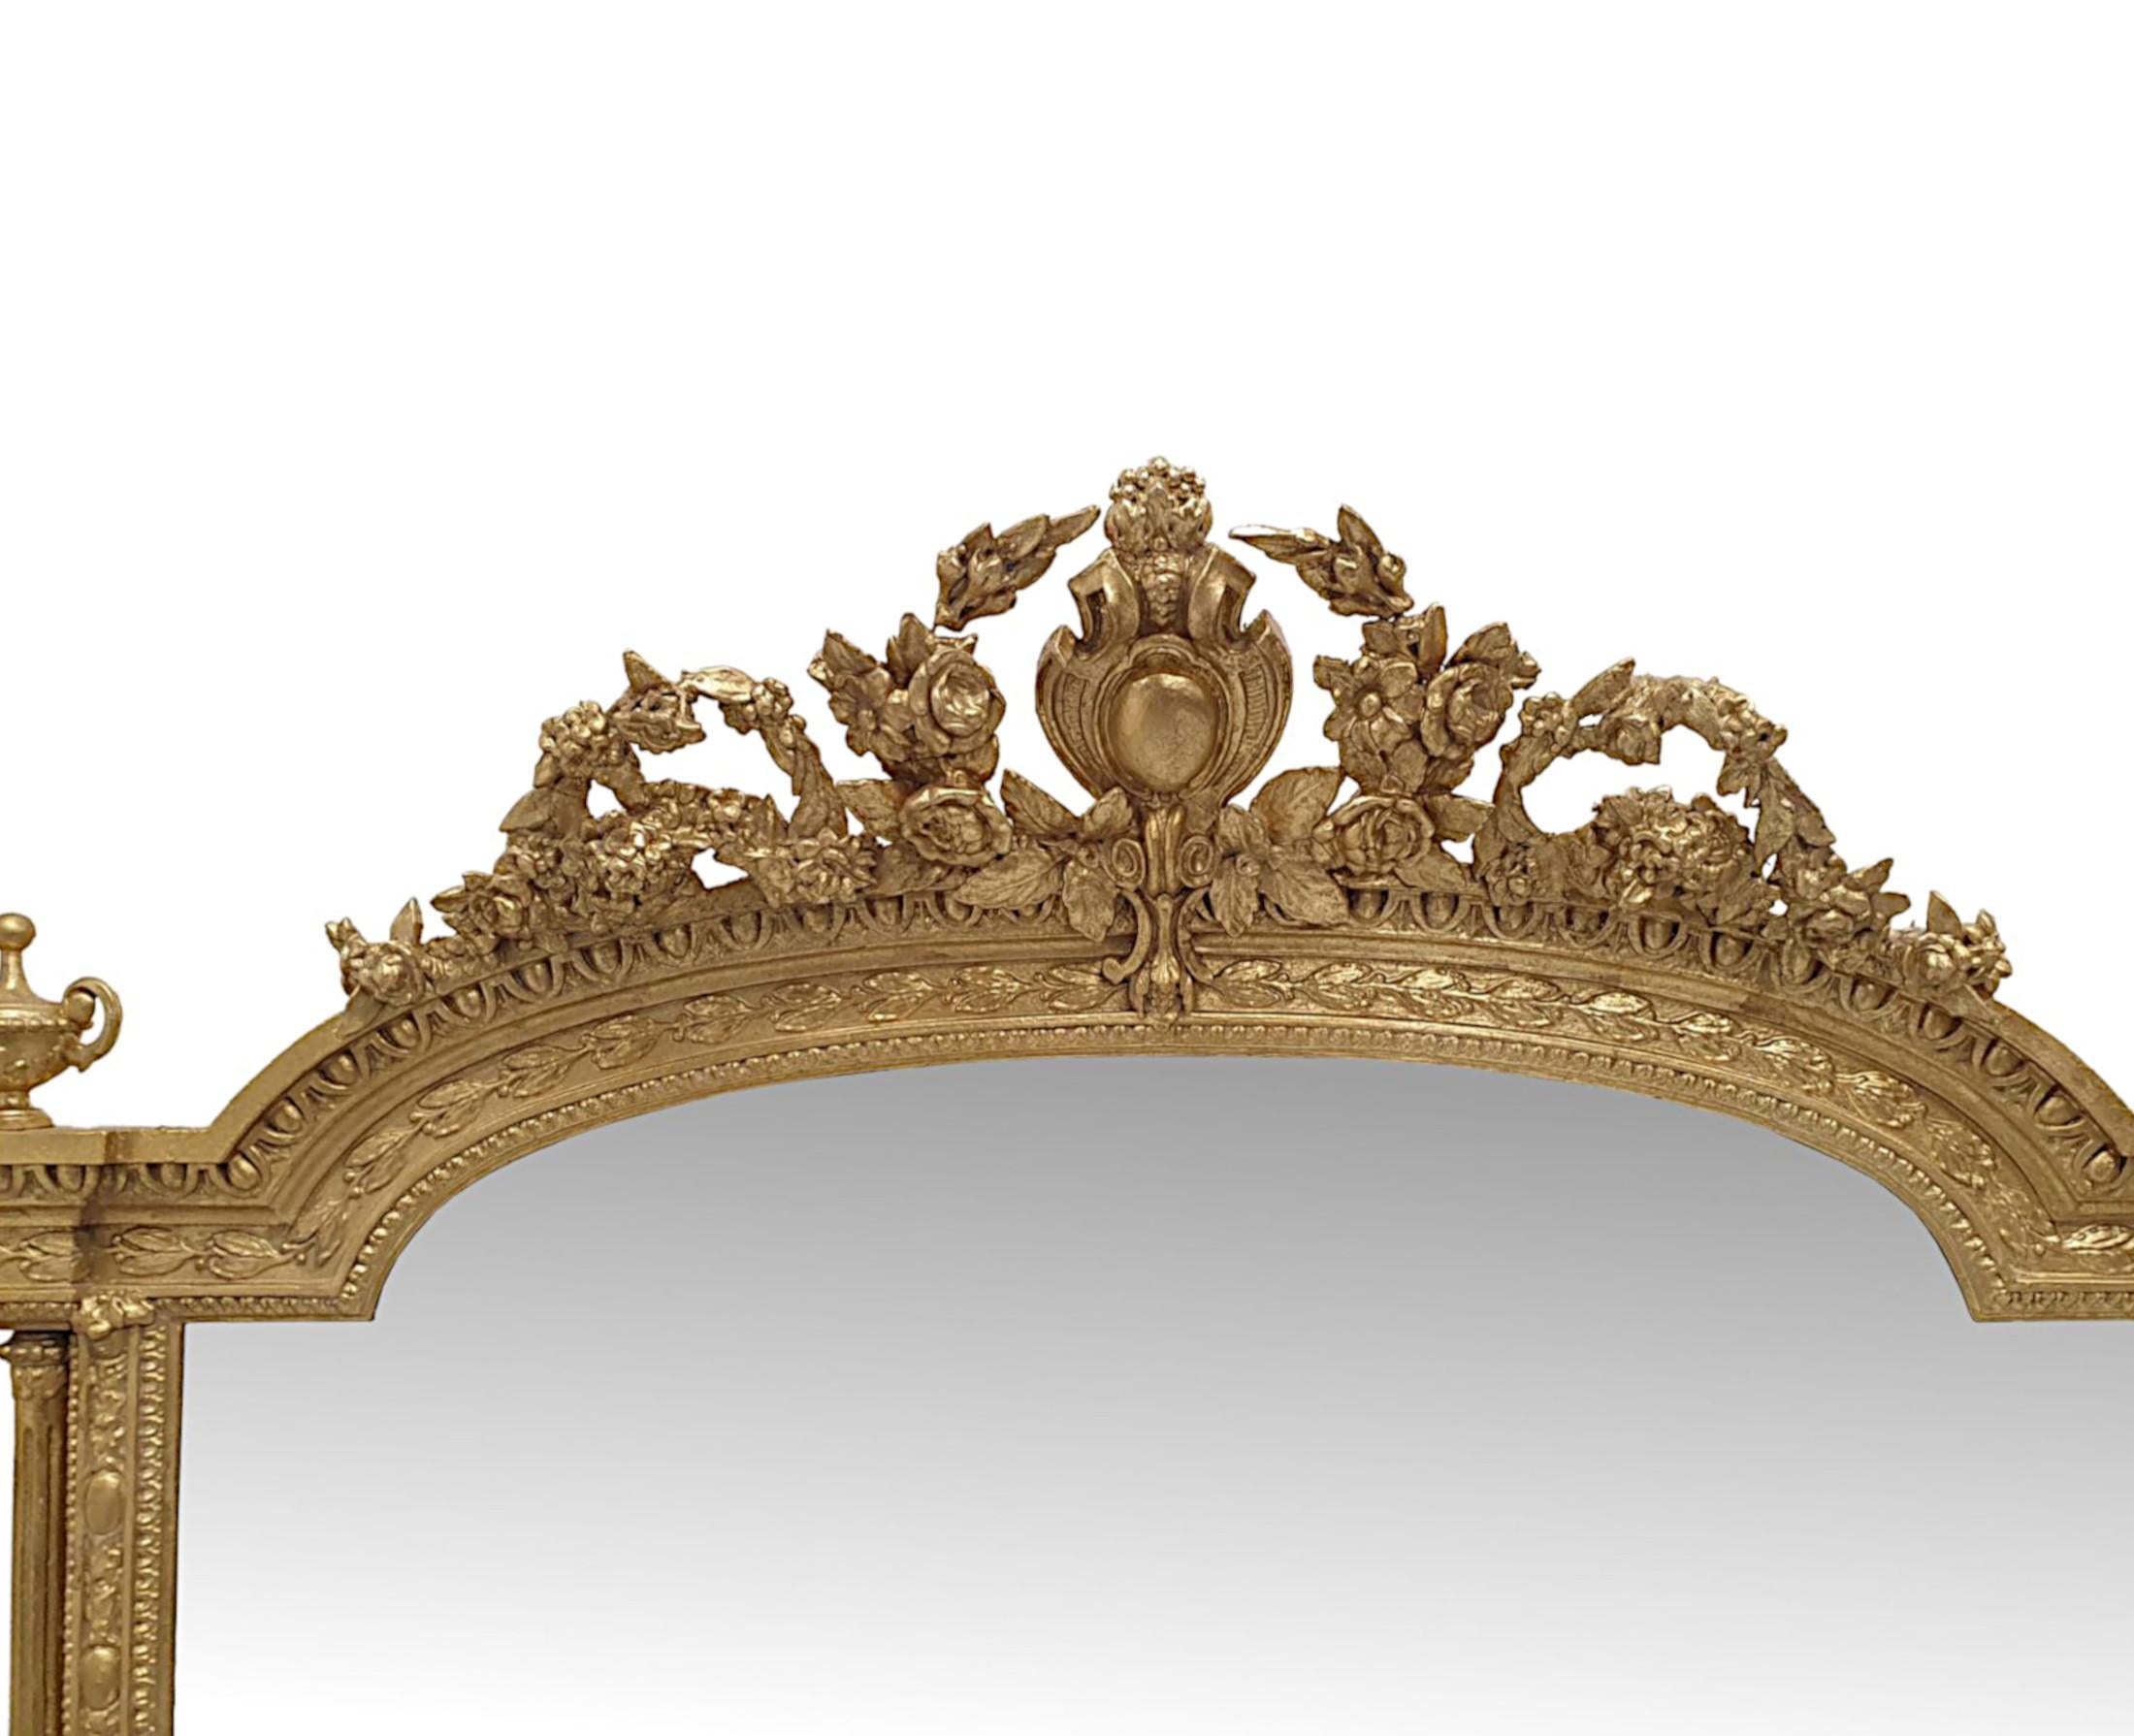 Eine sehr seltene und beeindruckende 19. Jahrhundert vergoldet overmantle Spiegel der großen Proportionen.  Die Spiegelglasplatte in rechteckiger Form mit gewölbter Oberseite befindet sich in einem fein handgeschnitzten, profilierten und geriffelten